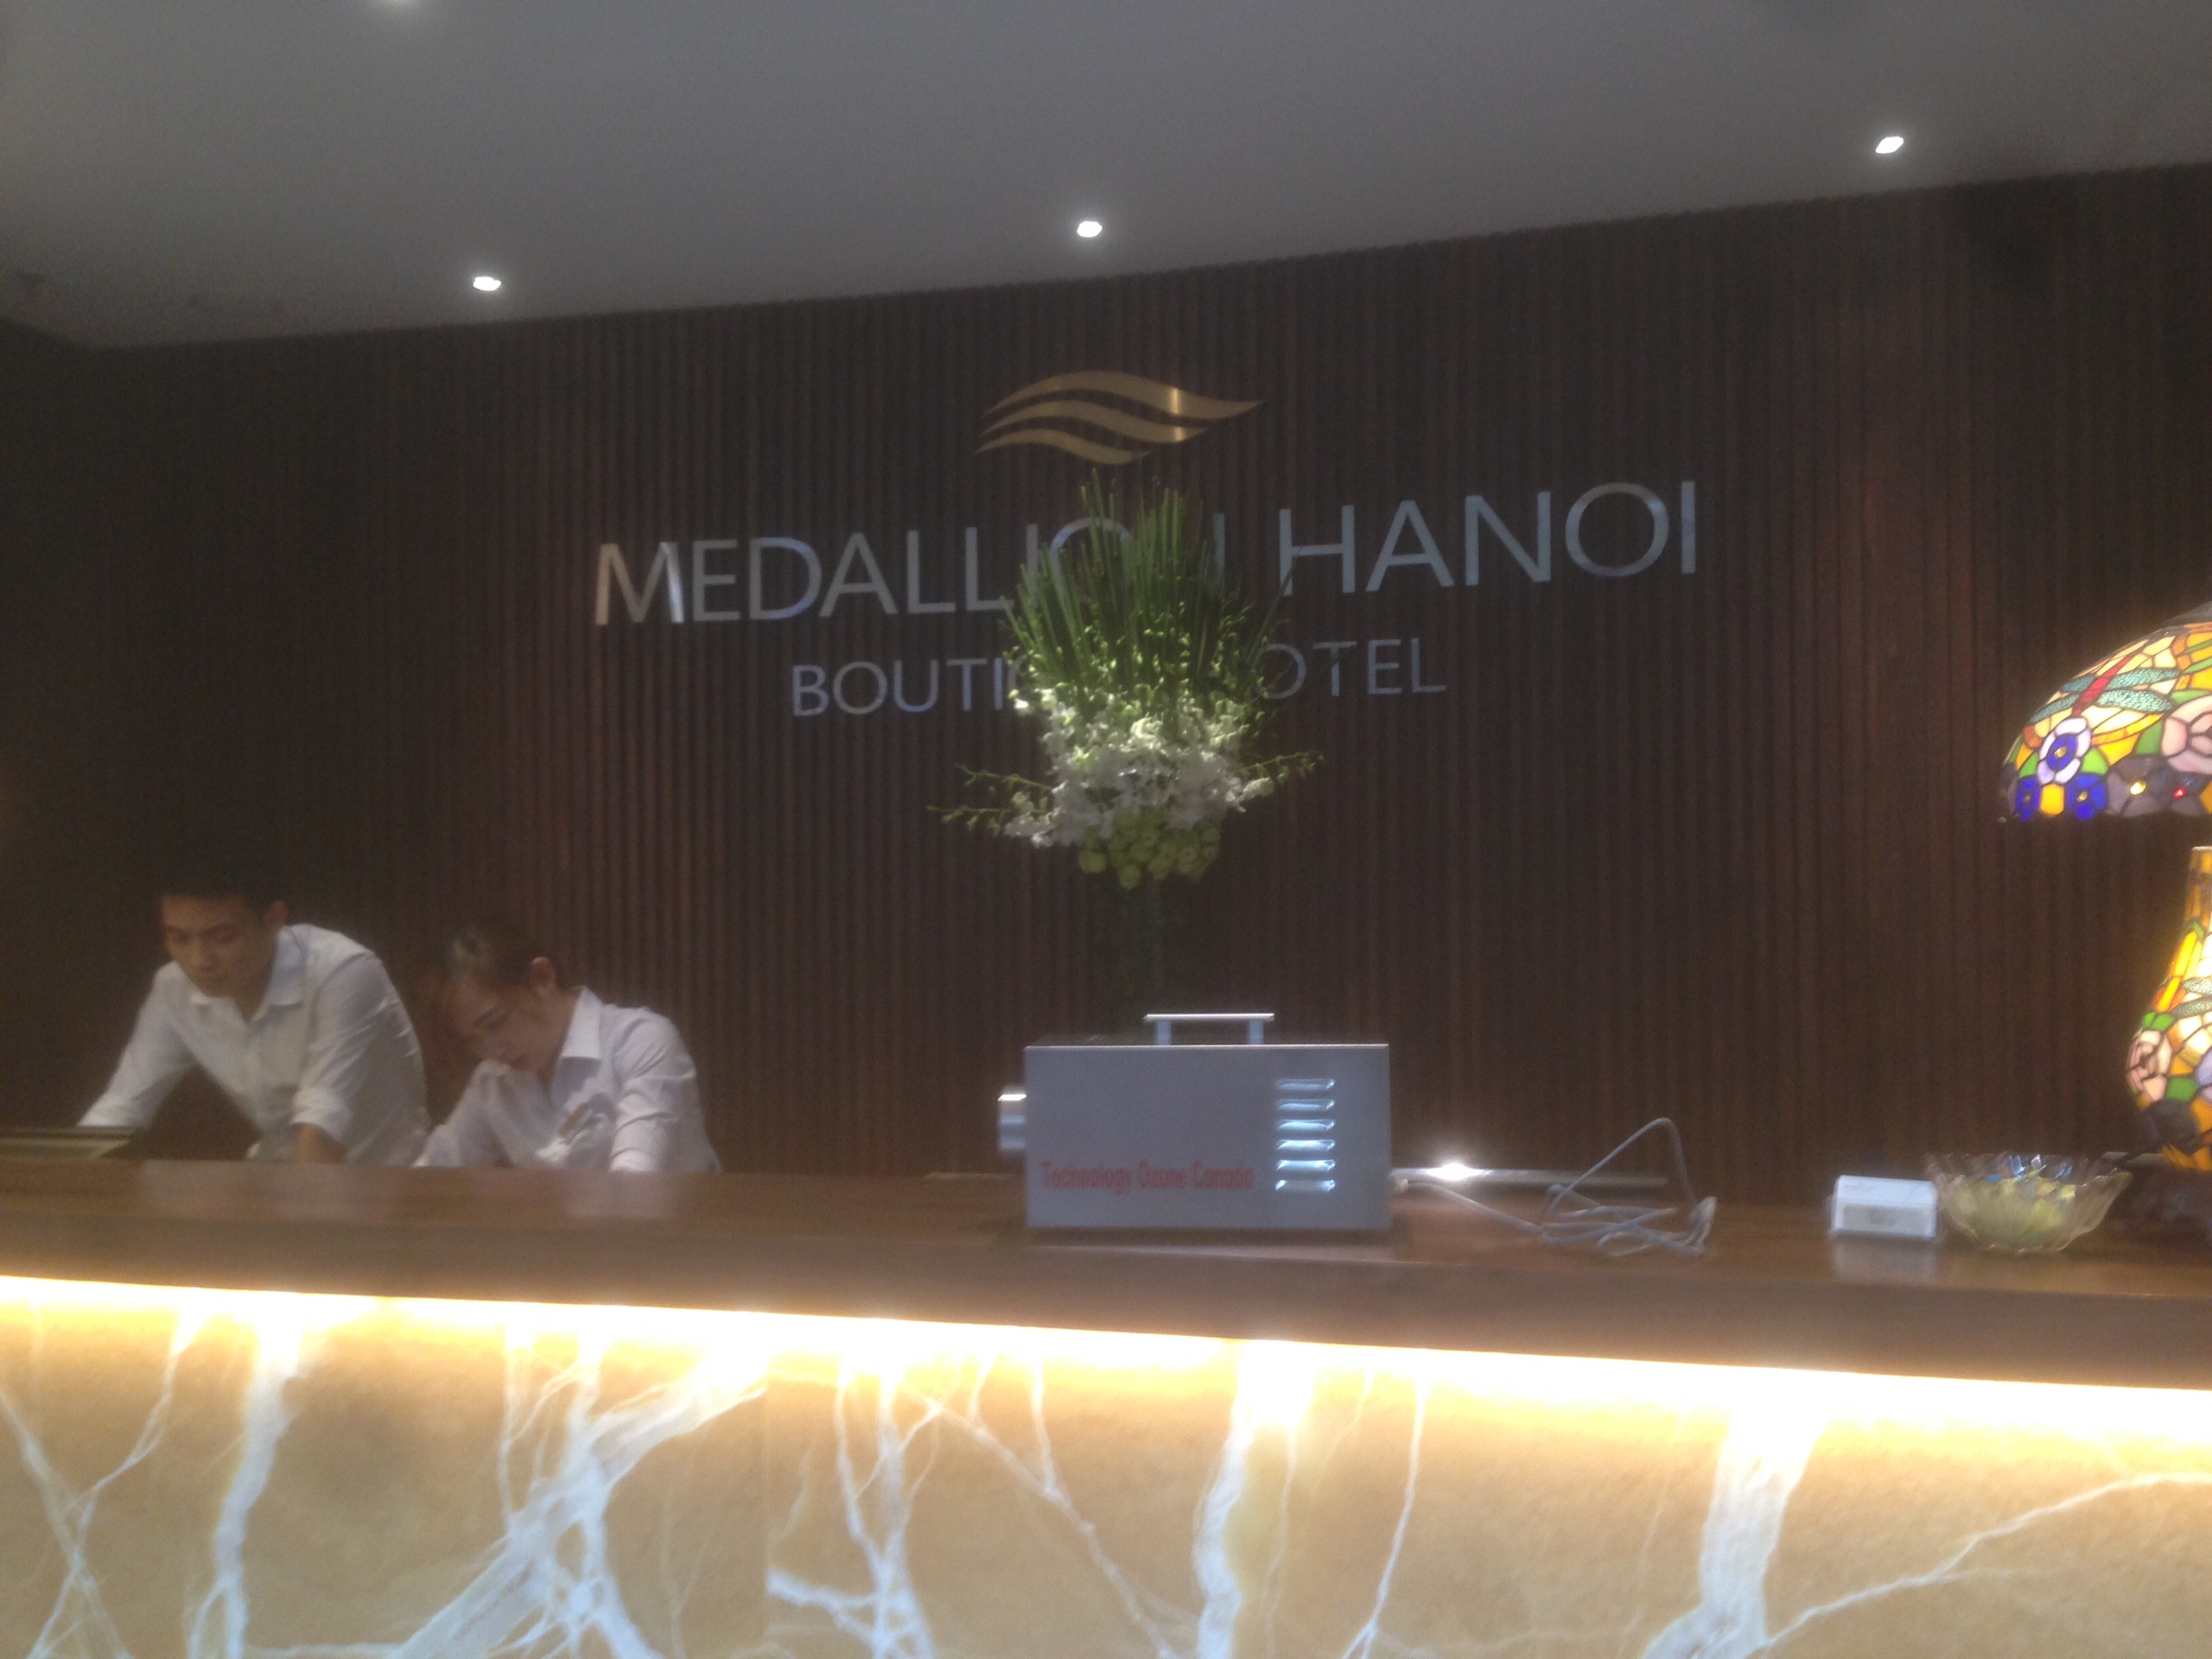 Máy khử mùi DrOzone Clean C3 được bàn giao tại sảnh chờ Medallion Hanoi Hotel